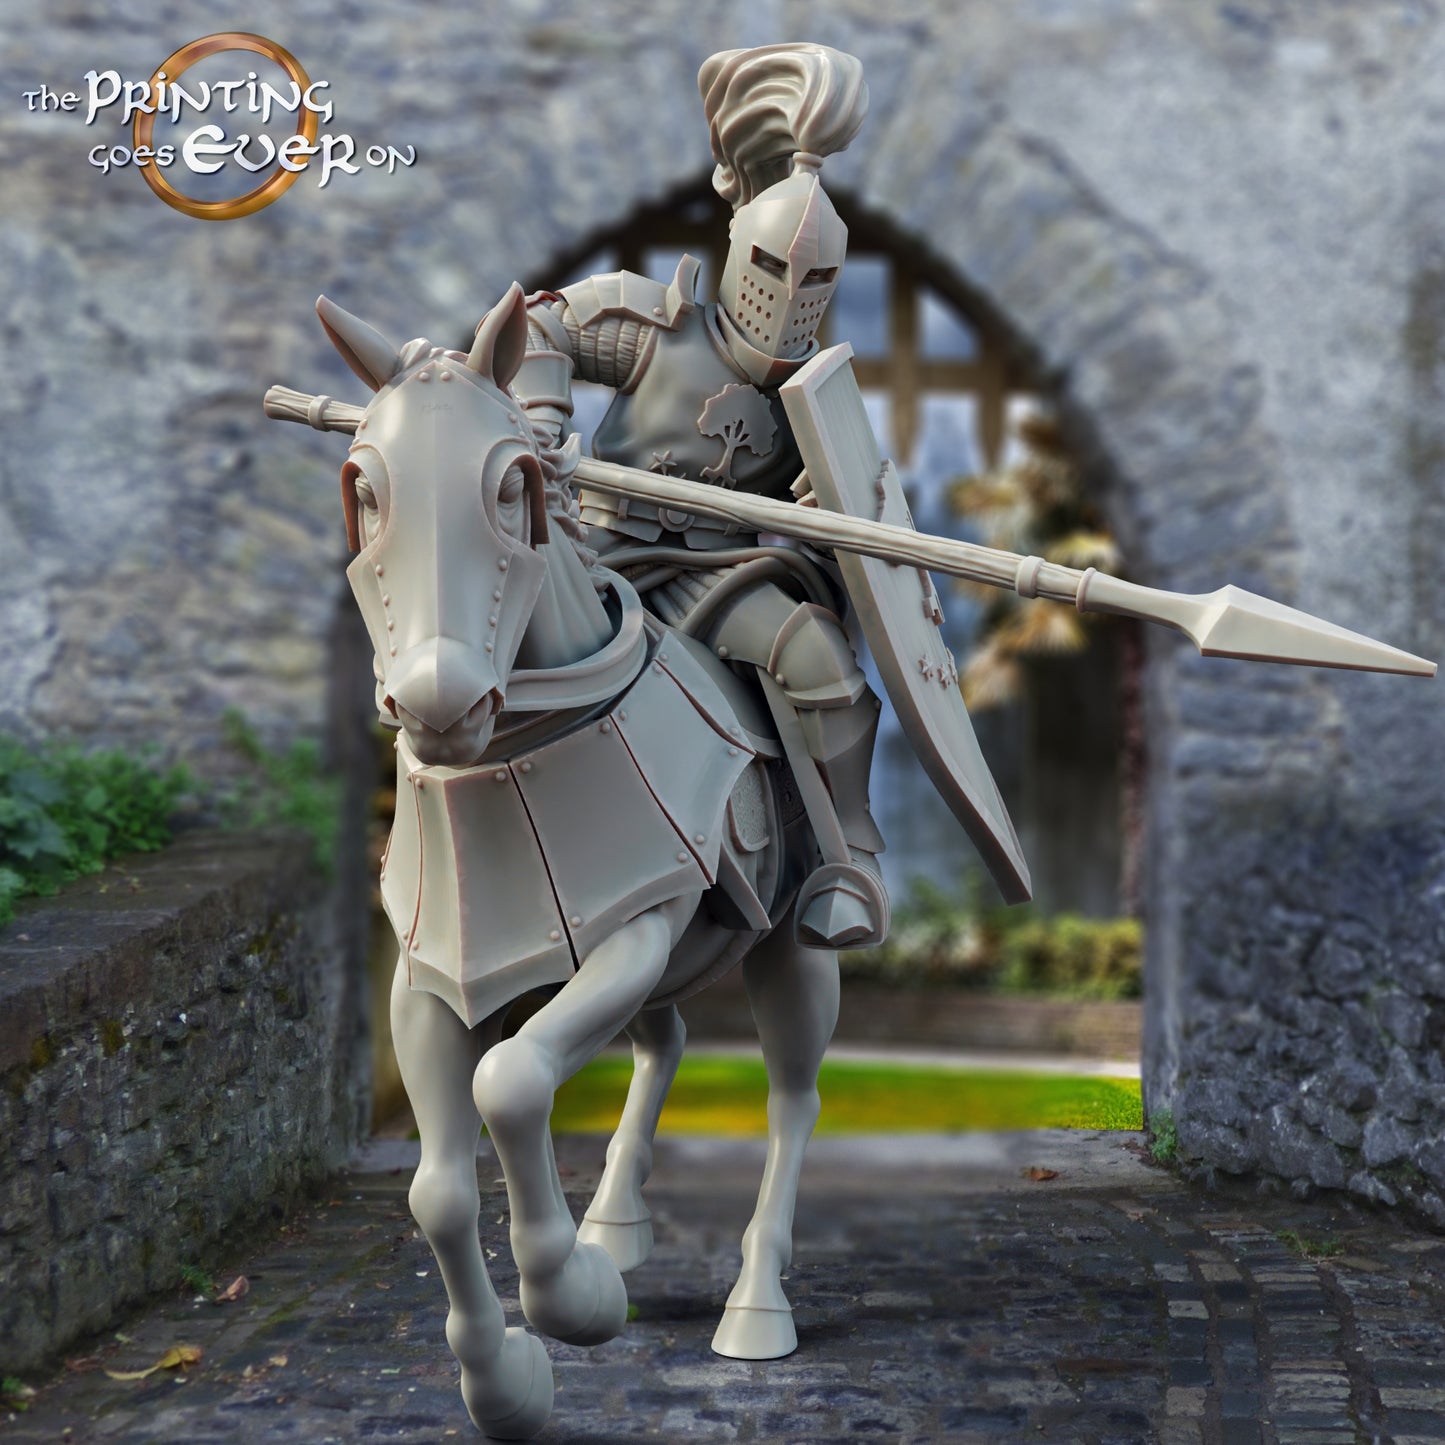 Produktfoto mittelalterliche historische Figur 75mm Scale The Printing Goes Ever On (TPGEO)  0: Mittelalterliche Ritter Figuren Reiter B Krieger von Gonthan